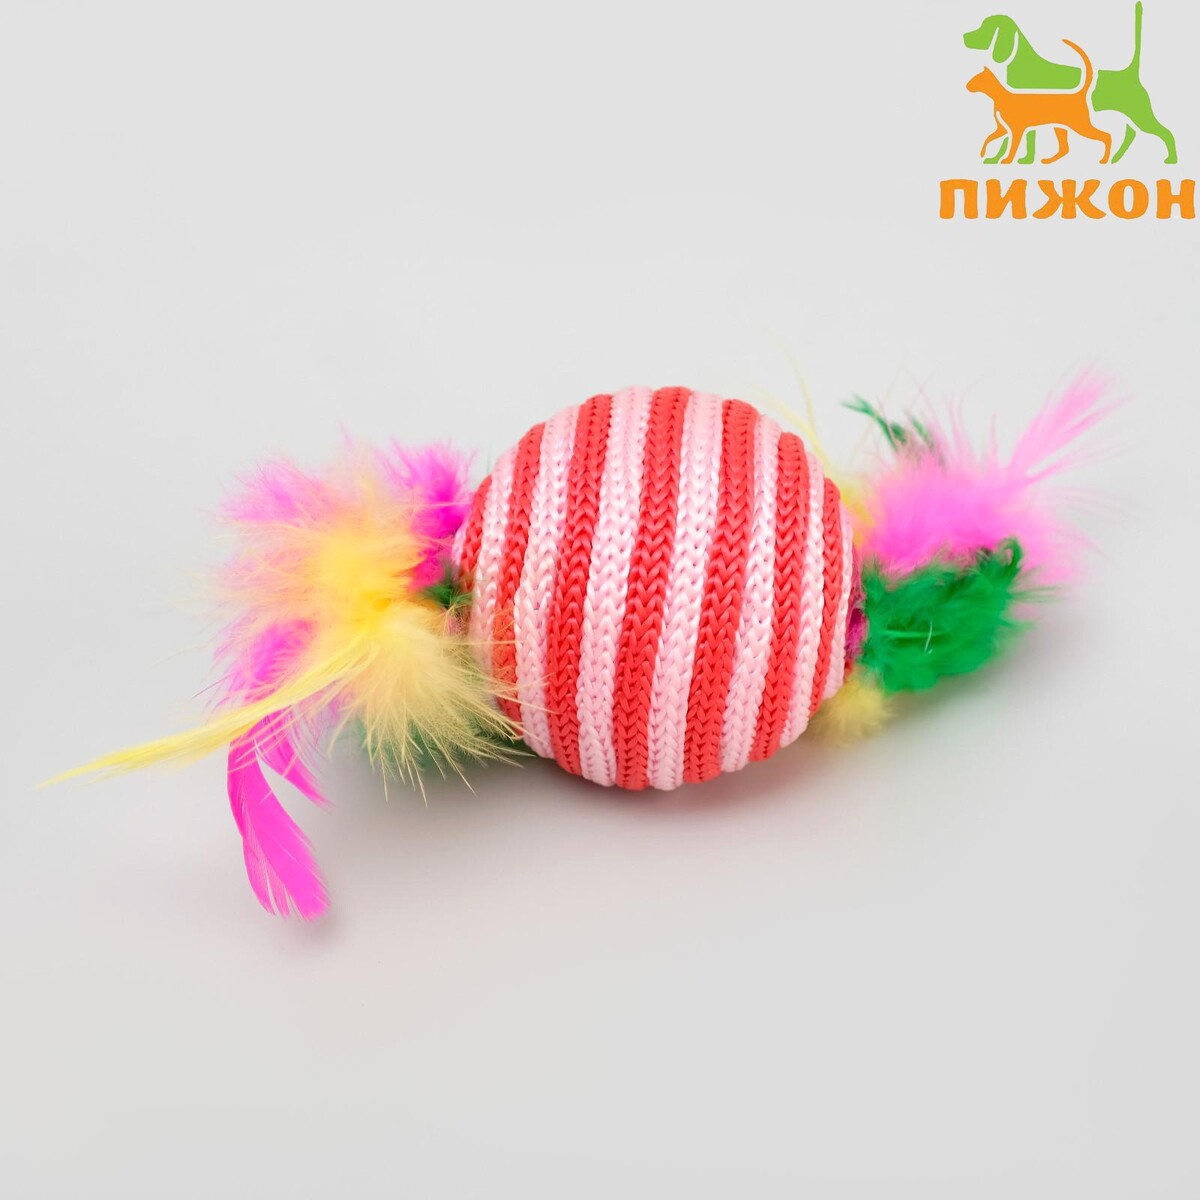 Шар-погремушка с перьями двухцветный, 4,5 см, красный/розовый шар погремушка сизалевый с перьями 4 5 см розовый